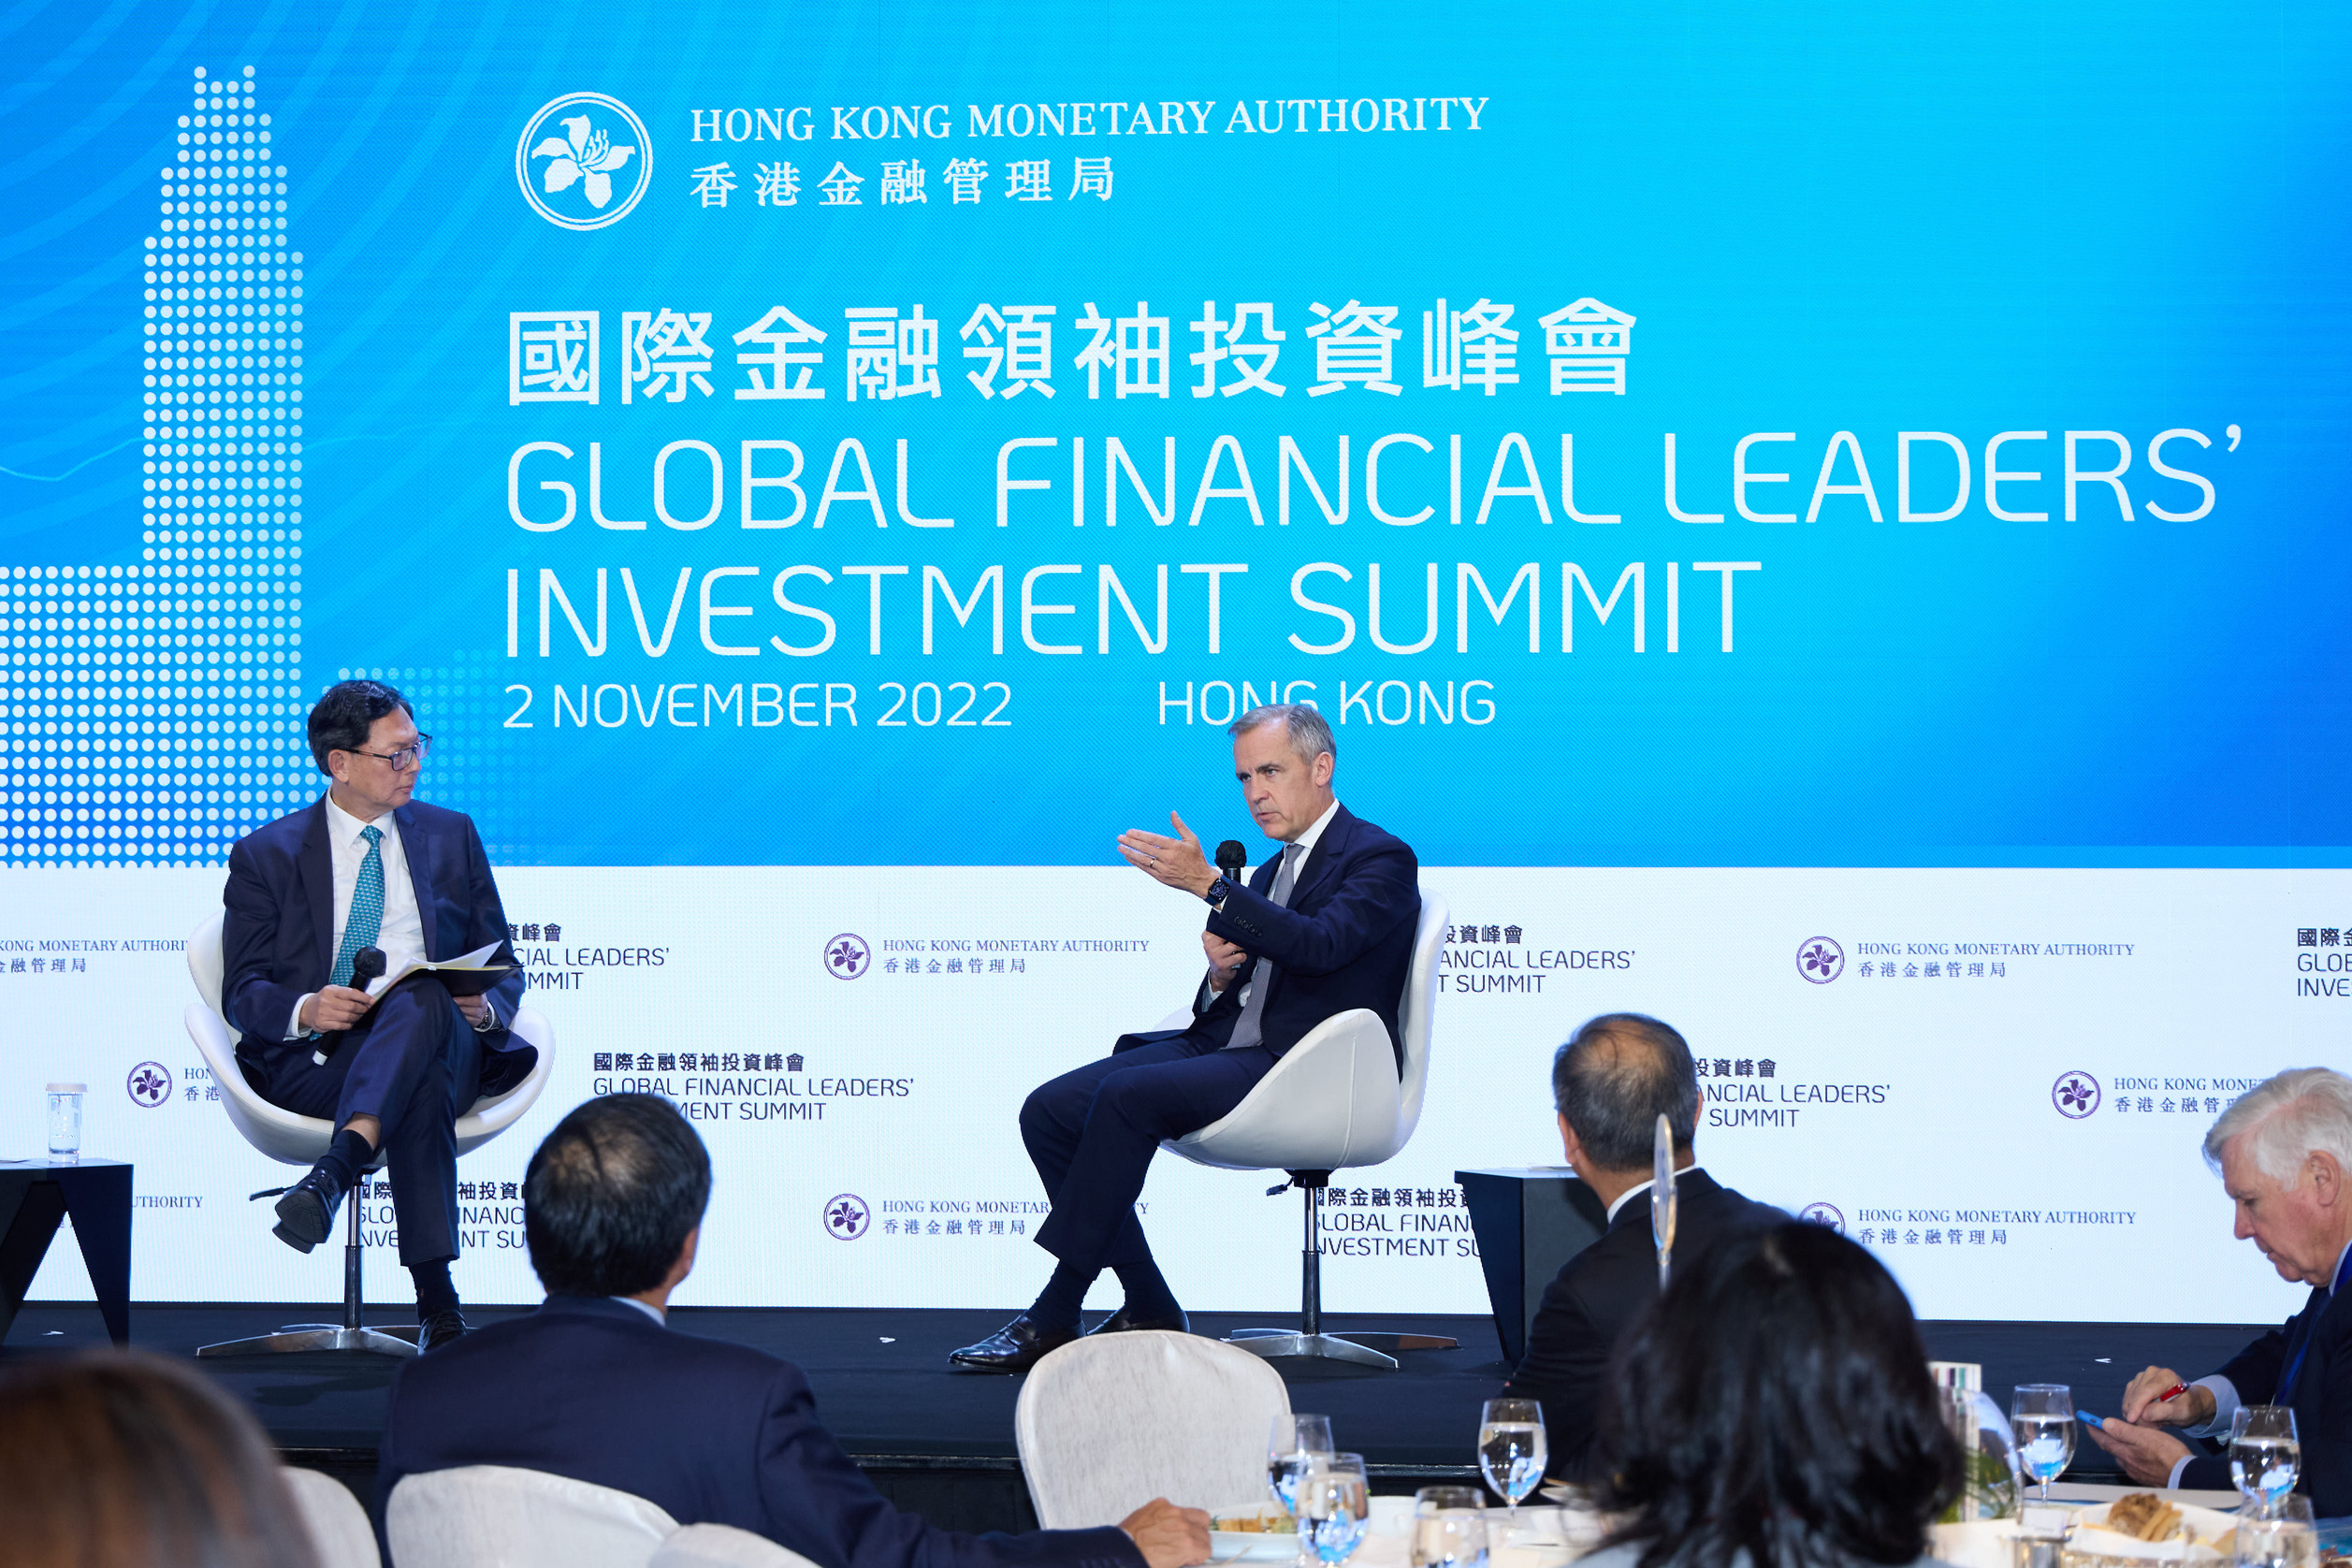 （左至右） 博楓資產管理公司副董事長兼 ESG 和影響力基金投資負責人、聯合國氣候行動和金融問題特使 Mark Carney；香港金融學院高級顧問、香港金融管理局前總裁陳德霖。